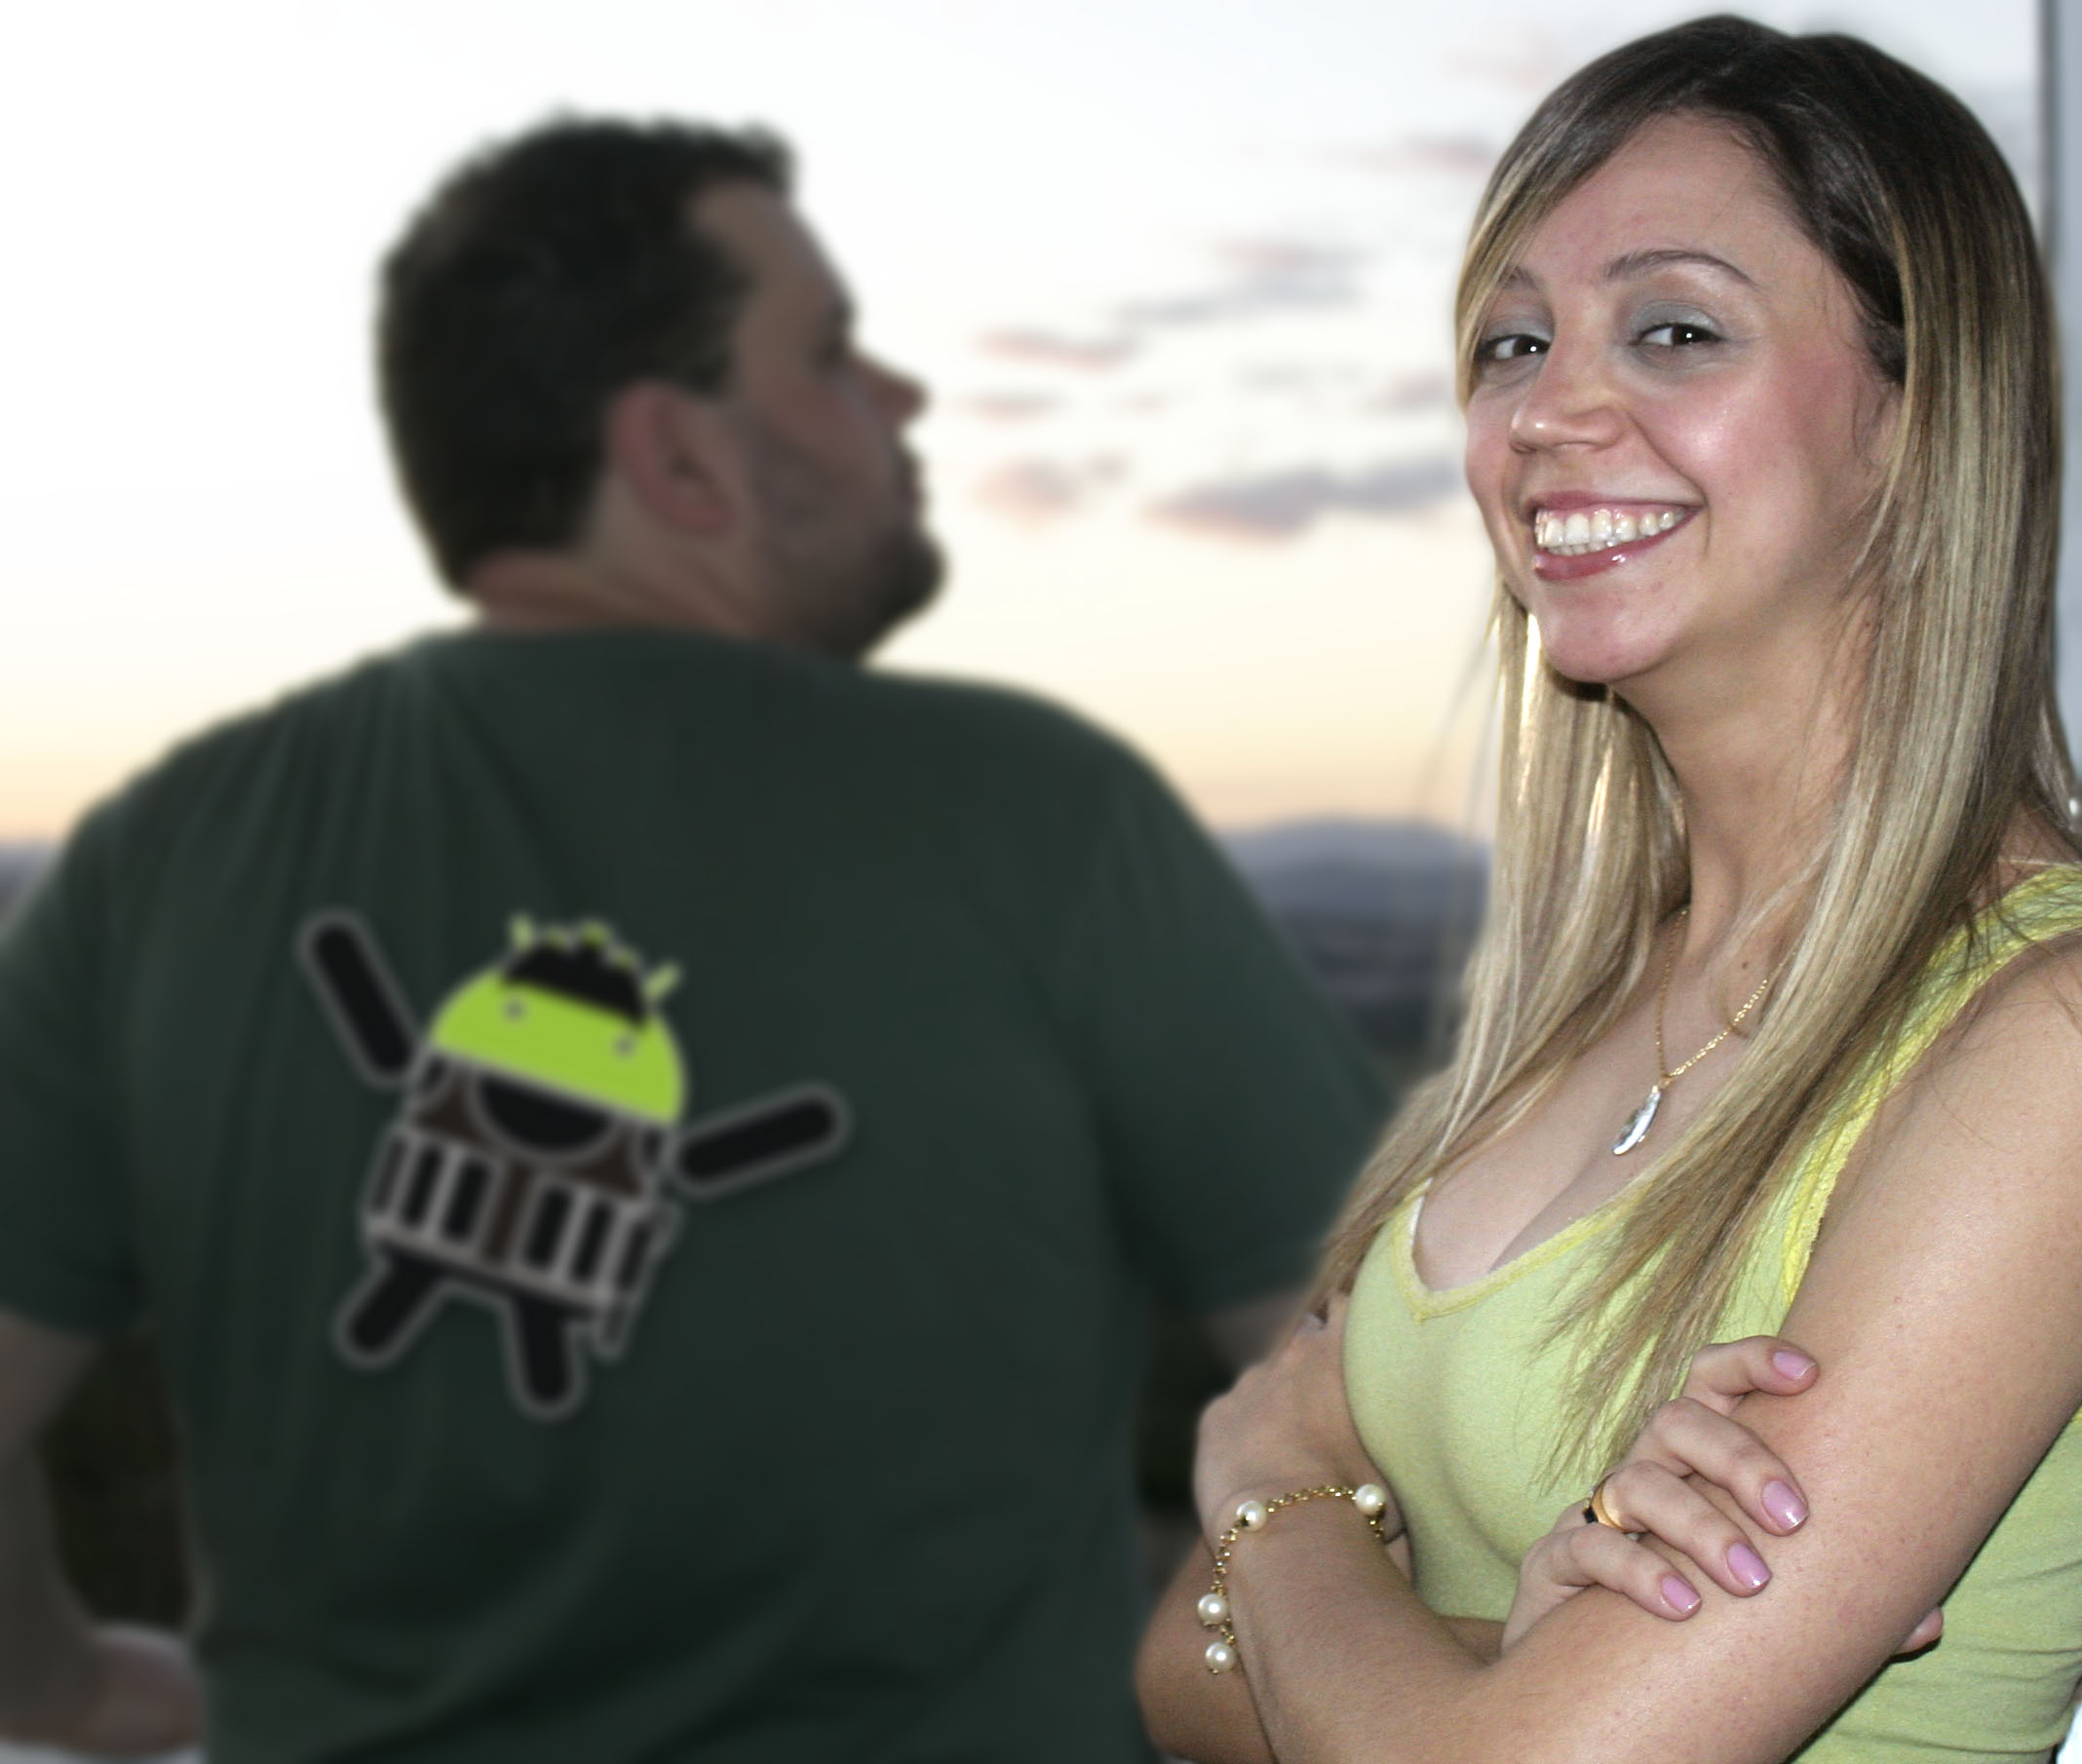 Ayla Brinate: "Quero um Android porque ele (e o Google Latitude) vão me ajudar a rastrear meu namorado!"